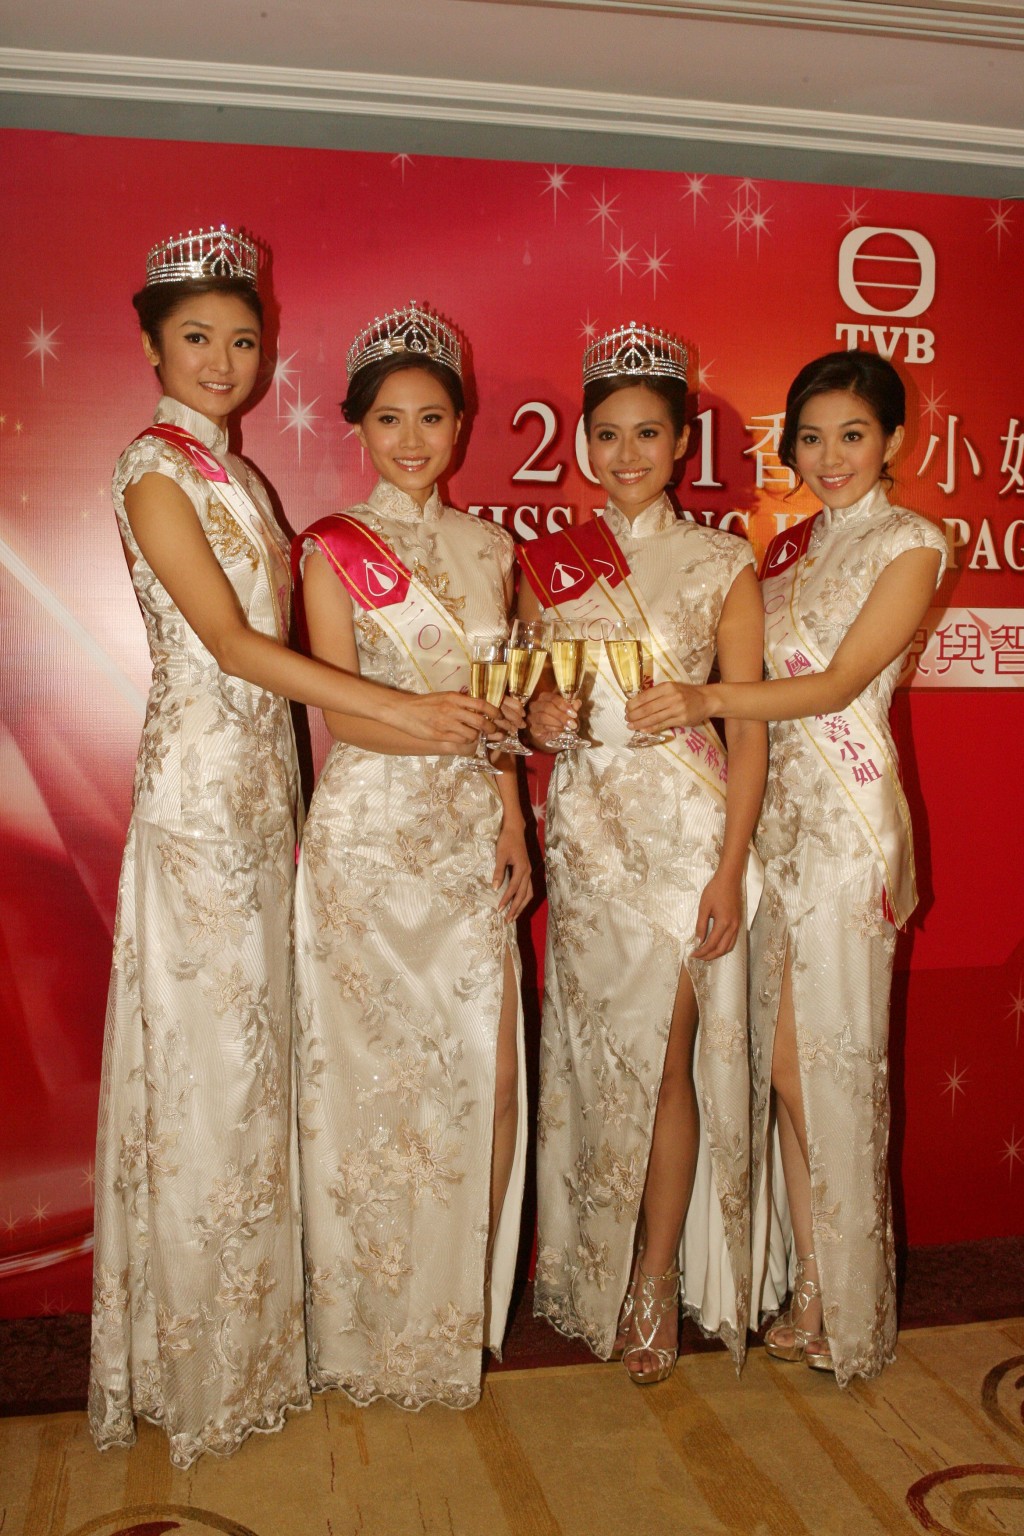 2011年港姐冠軍為朱晨麗、亞軍朱希敏、季軍許亦妮，梁麗翹獲得「國際親善小姐」獎項。